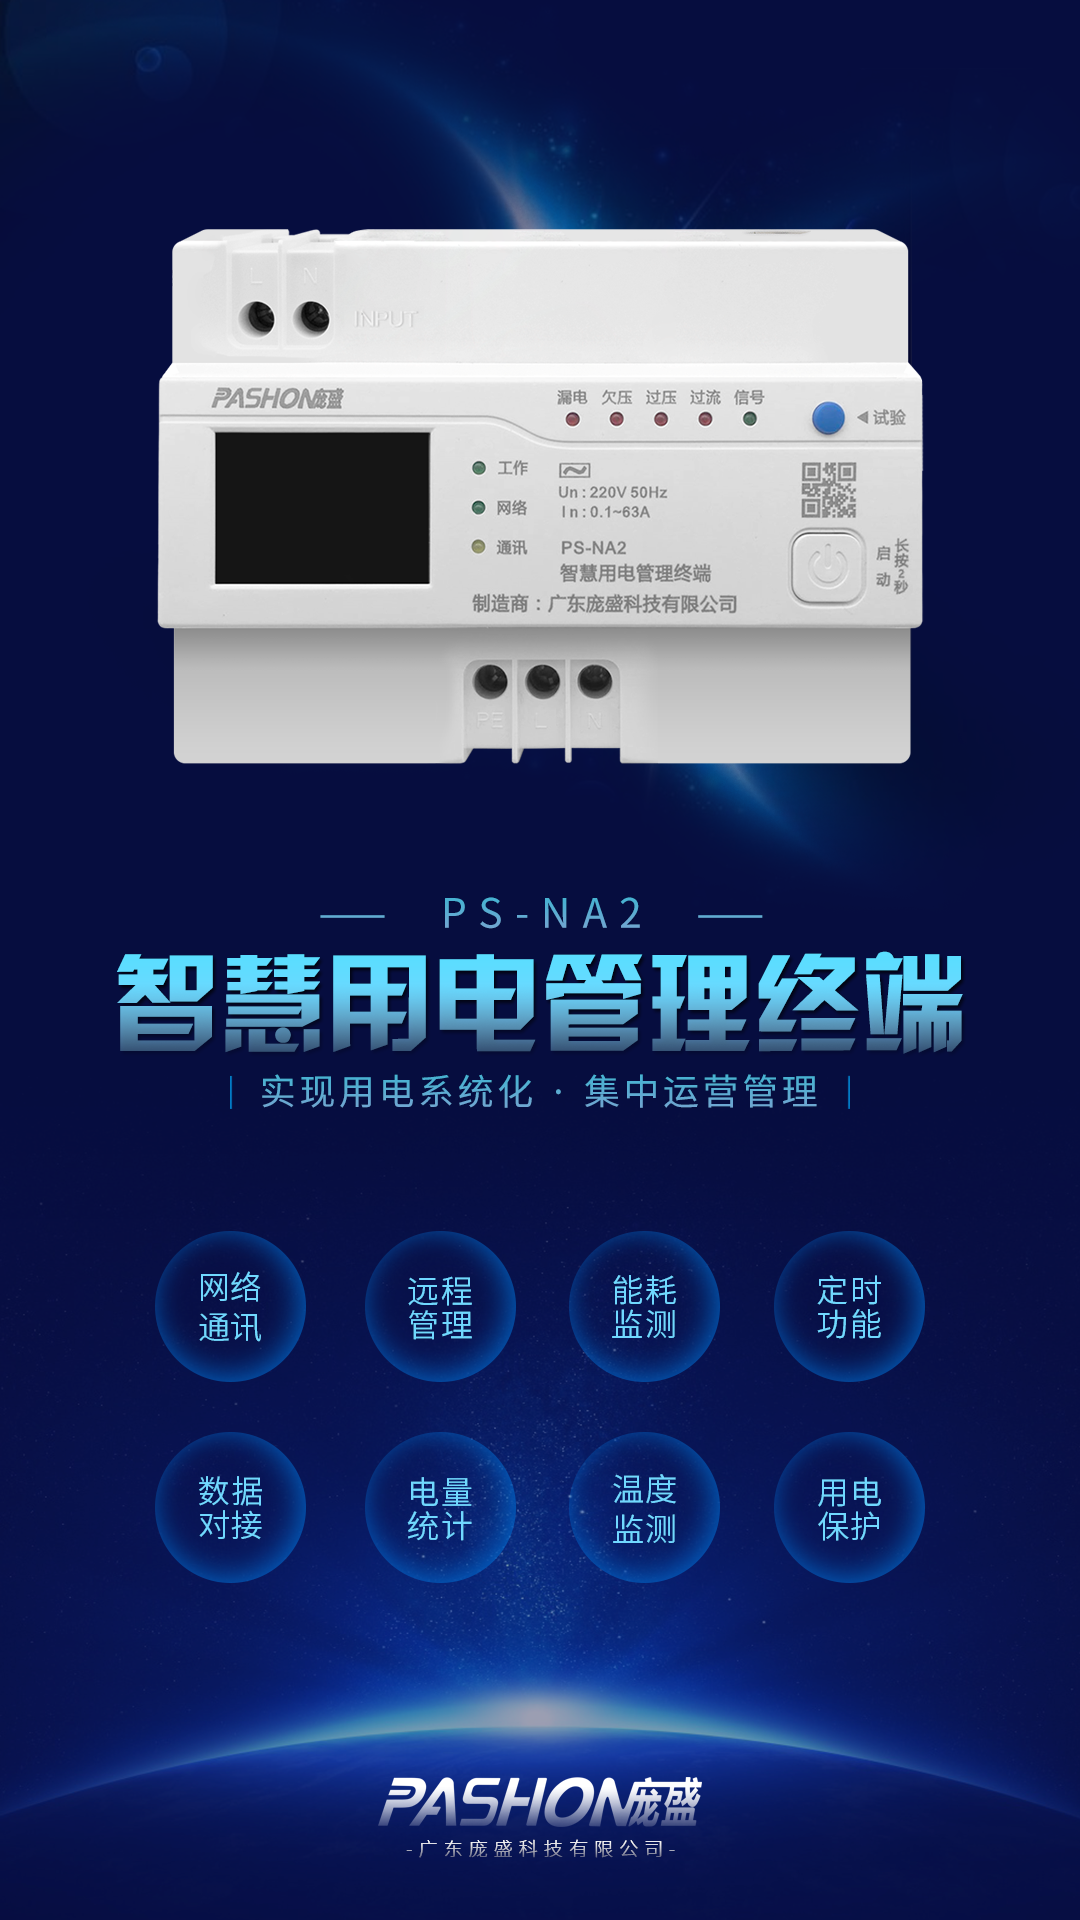 广东庞盛科技智慧用电管理终端用于智慧用电管控